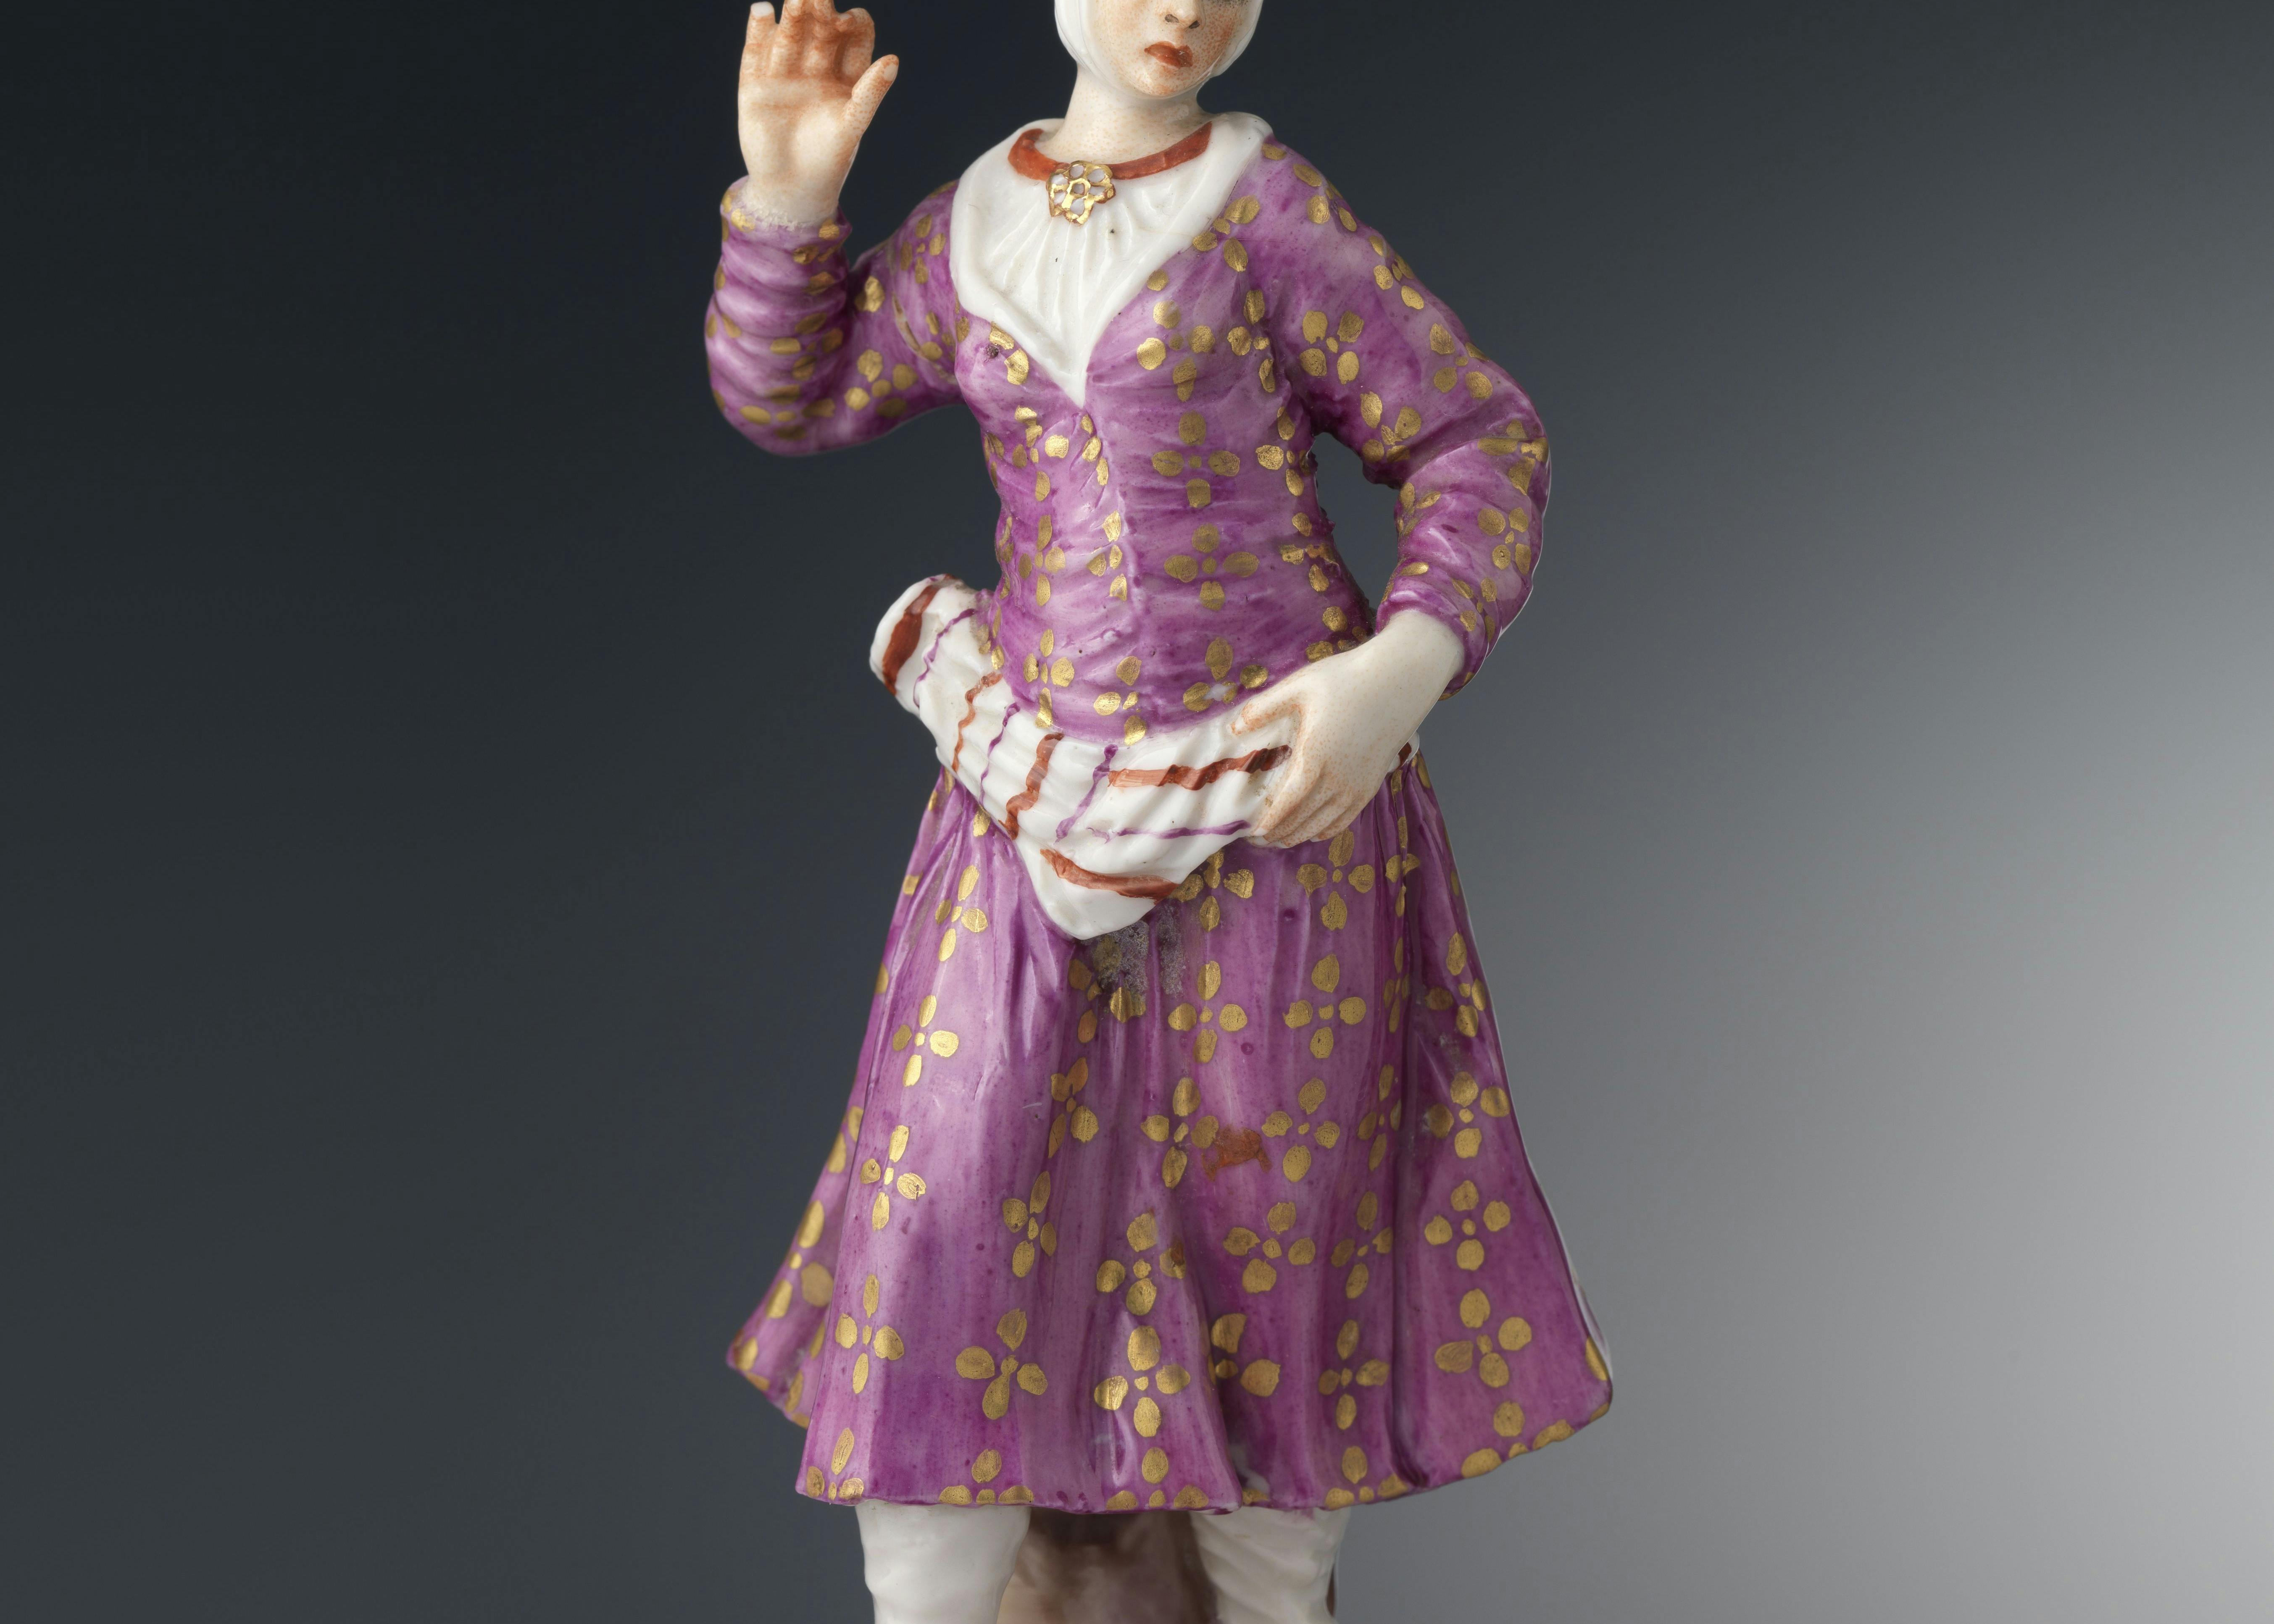 Figura femminile con abito rosa e oro e calzari orientaleggianti